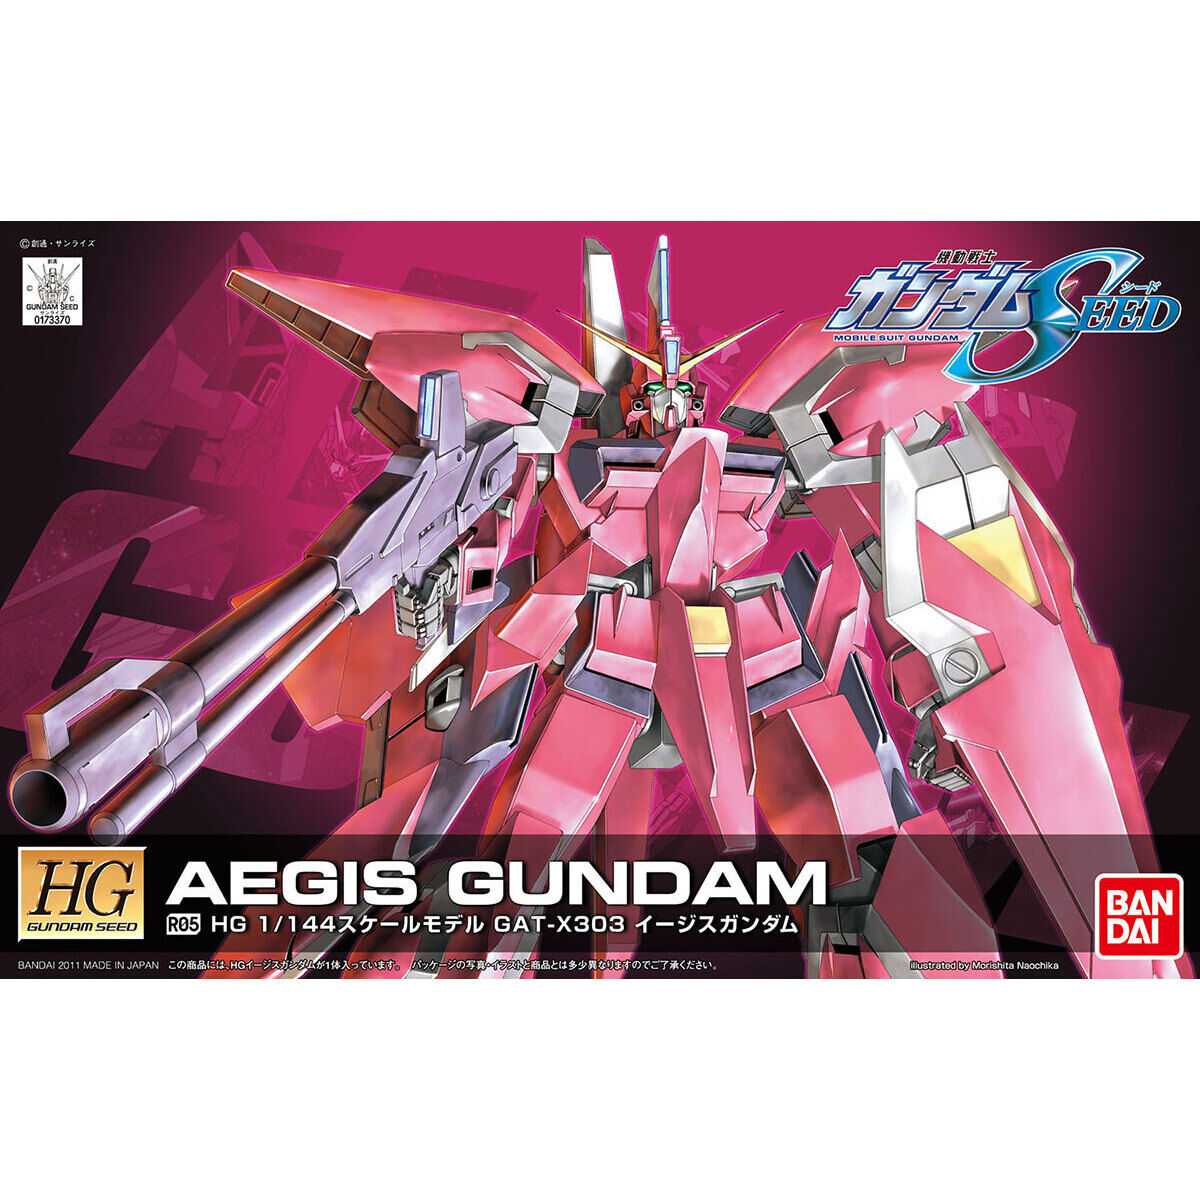 HG 기동전사 건담 SEED Aegis Gundam 1/144